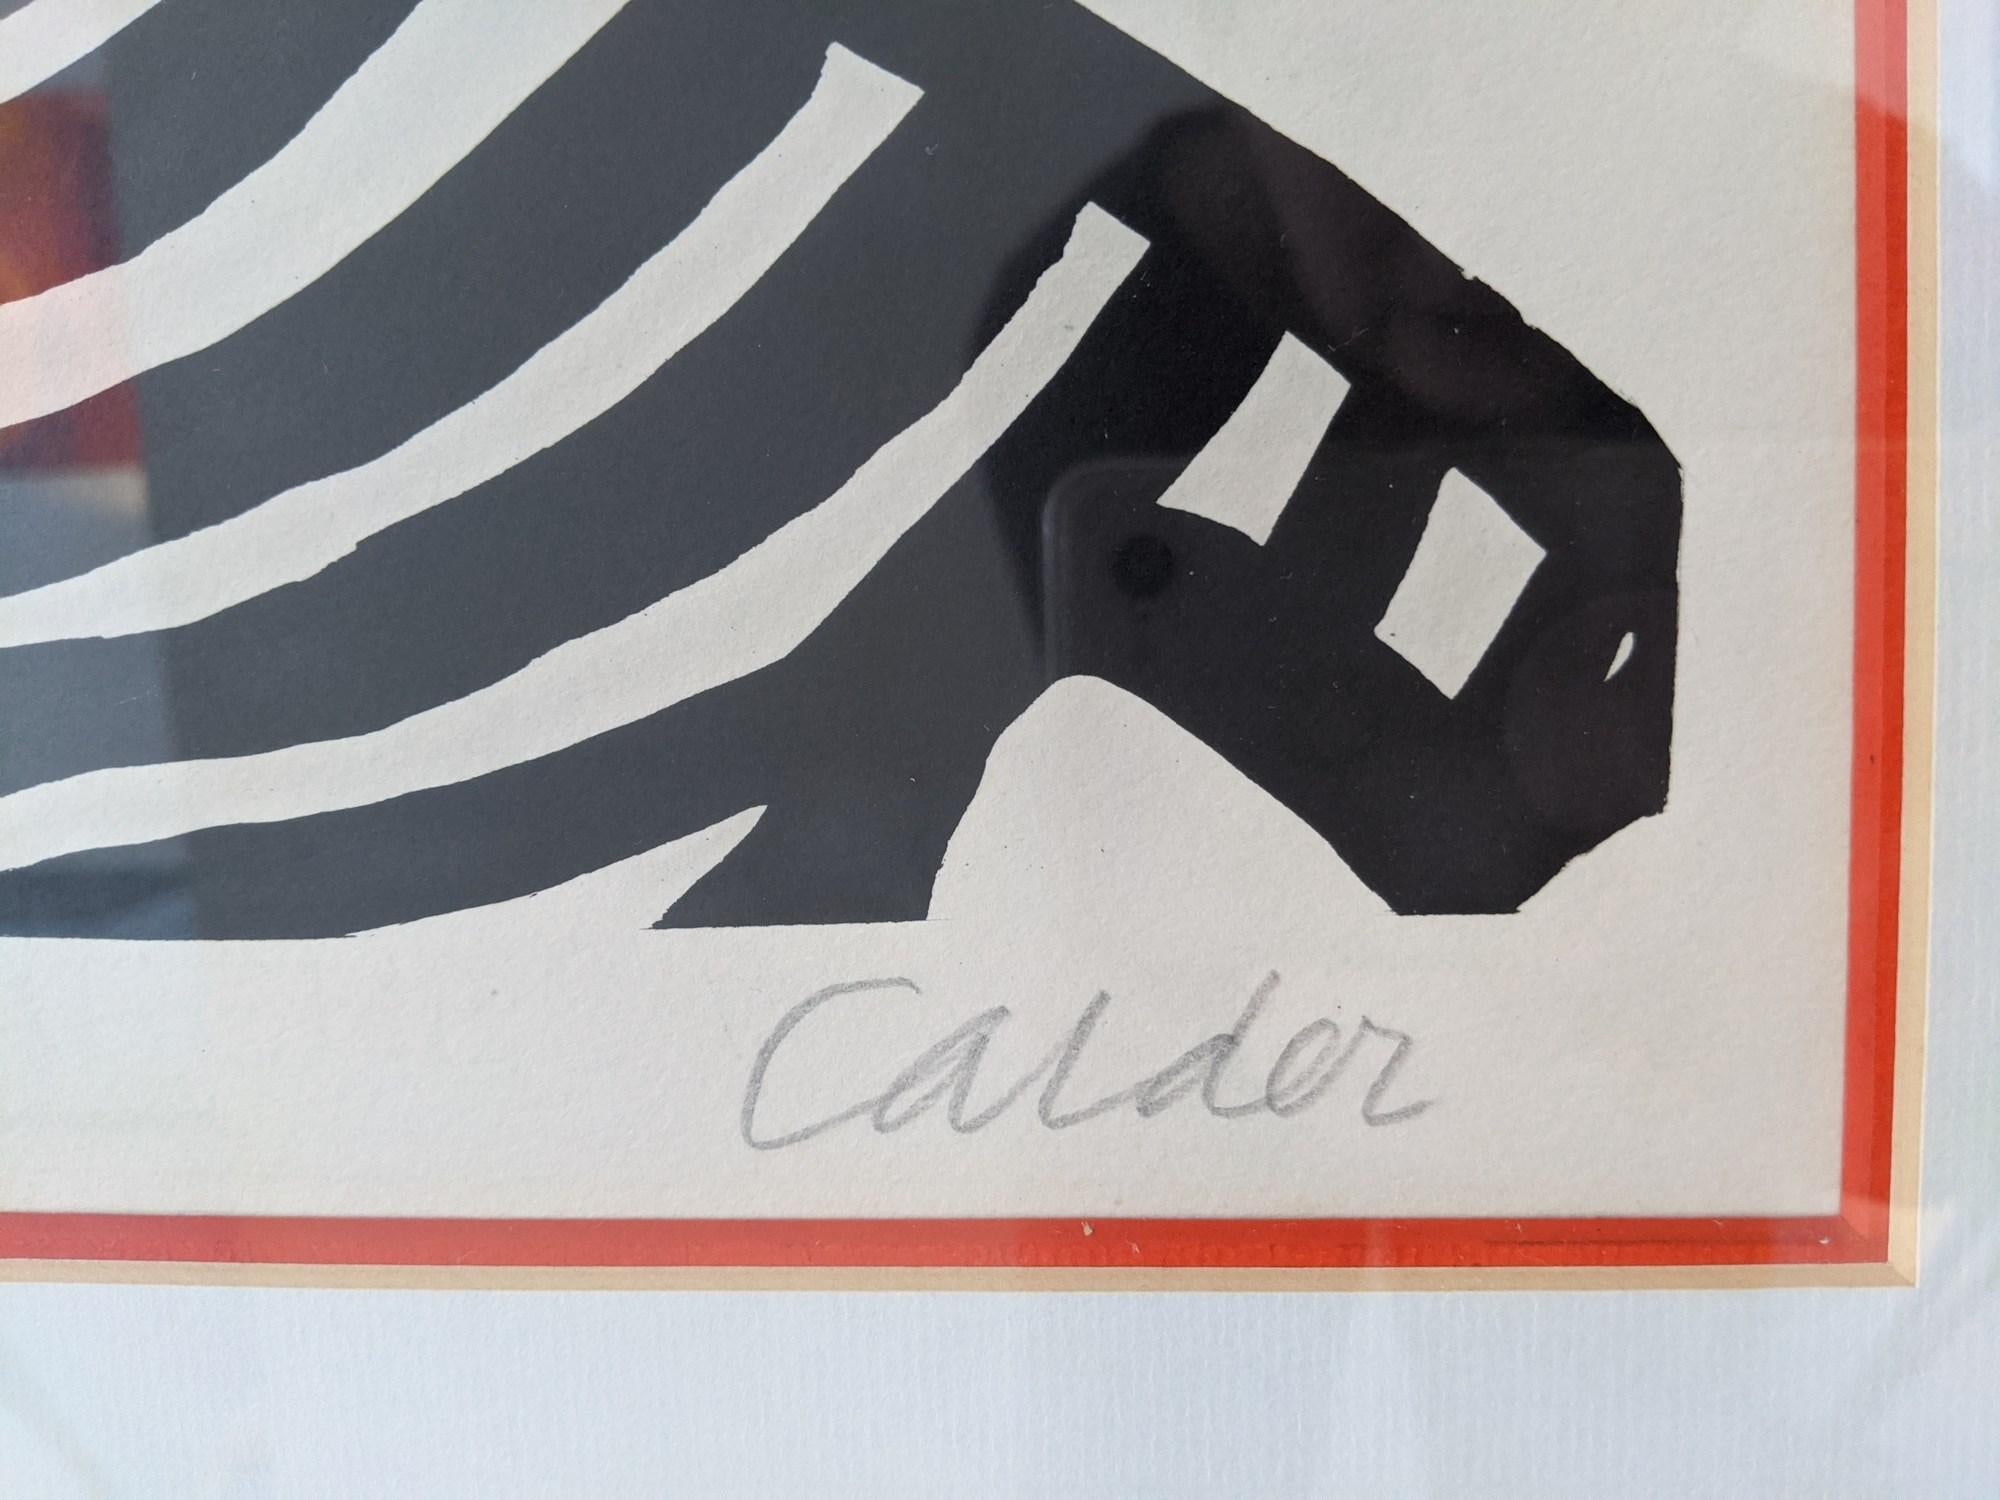 Artist : Alexander Calder
Title : 